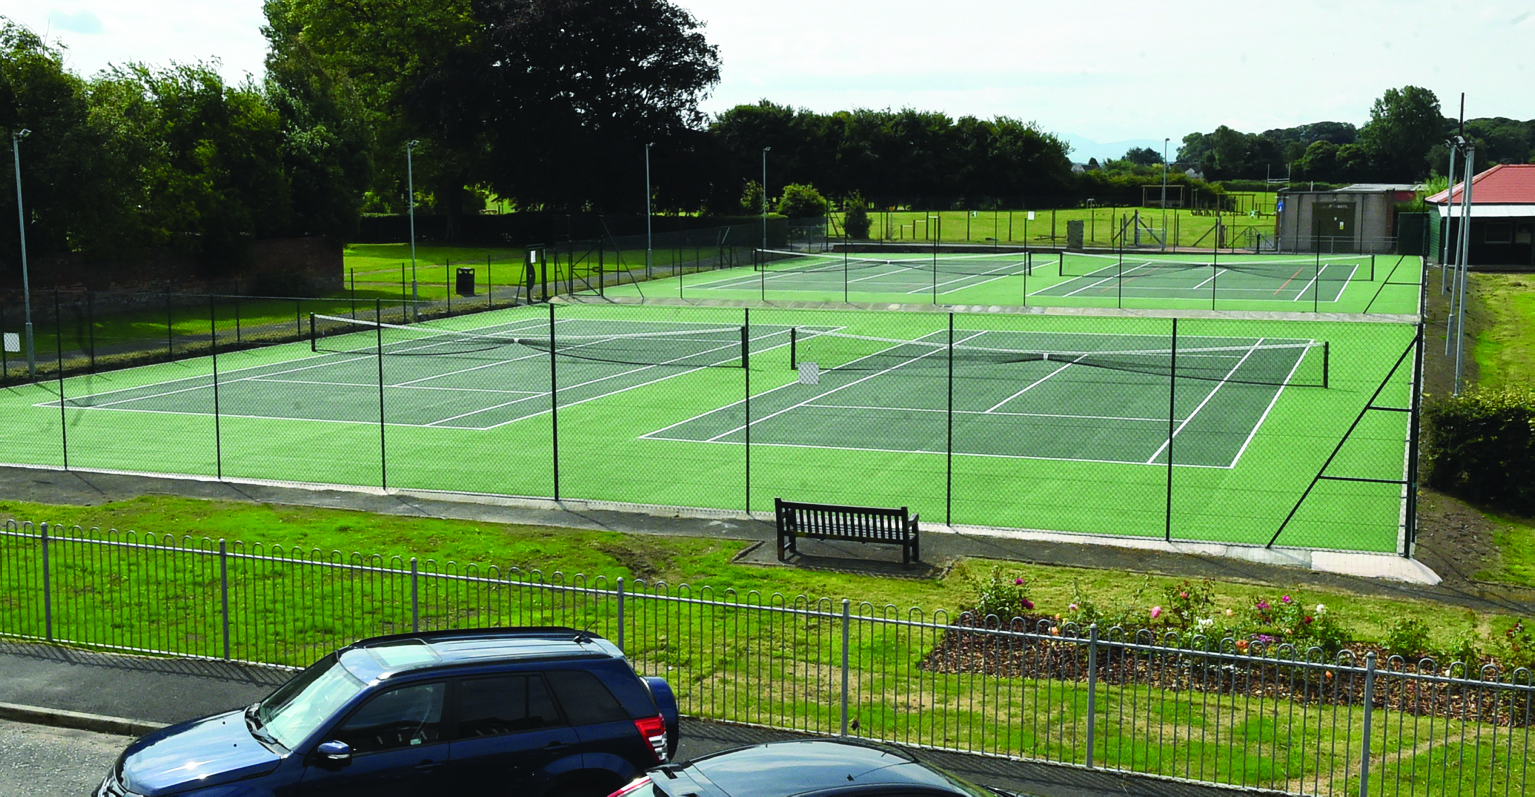 CCTV bid to deter tennis court attacks